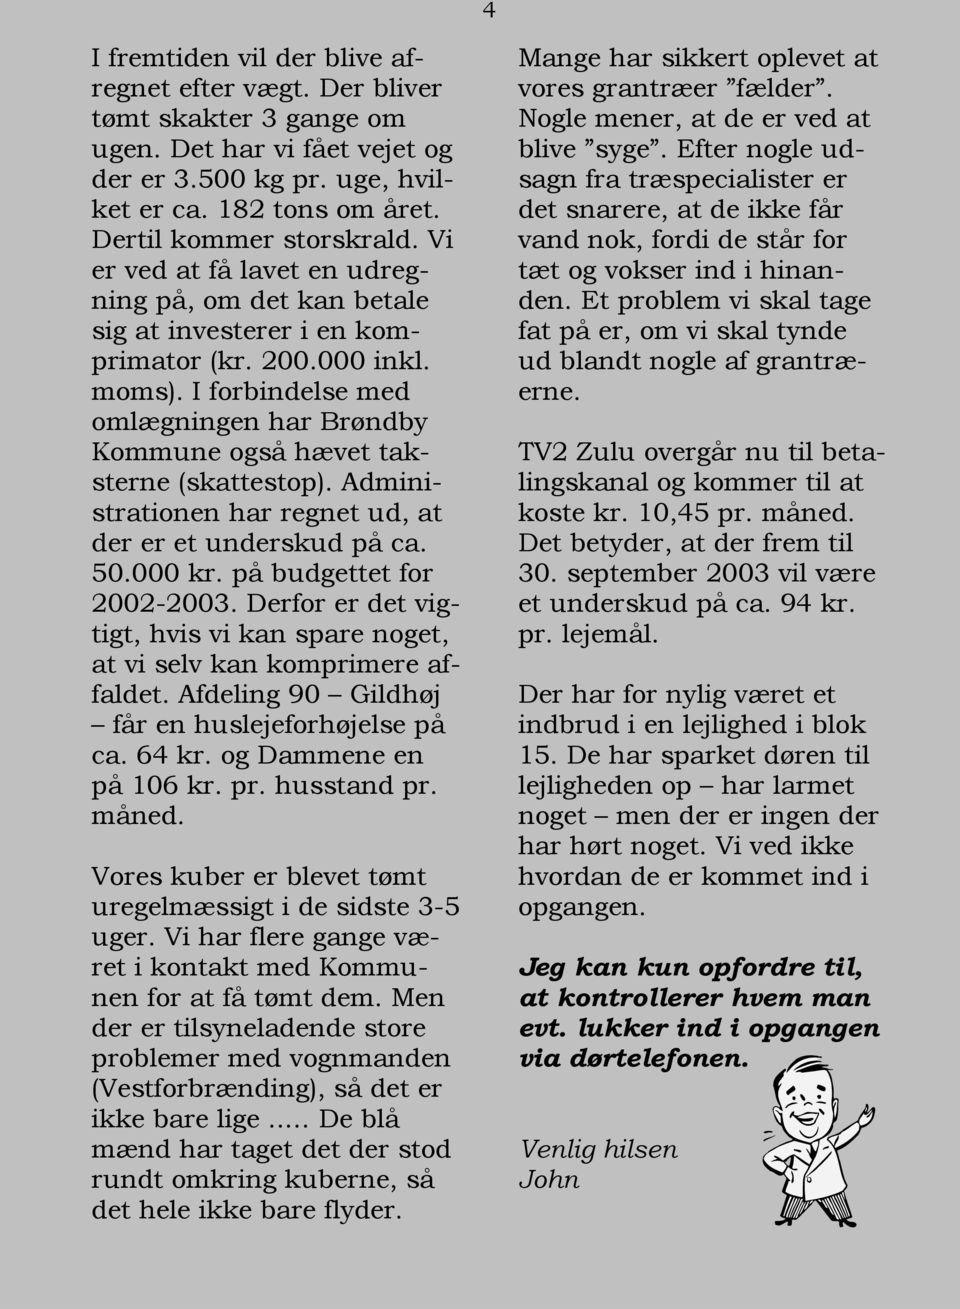 I forbindelse med omlægningen har Brøndby Kommune også hævet taksterne (skattestop). Administrationen har regnet ud, at der er et underskud på ca. 50.000 kr. på budgettet for 2002-2003.